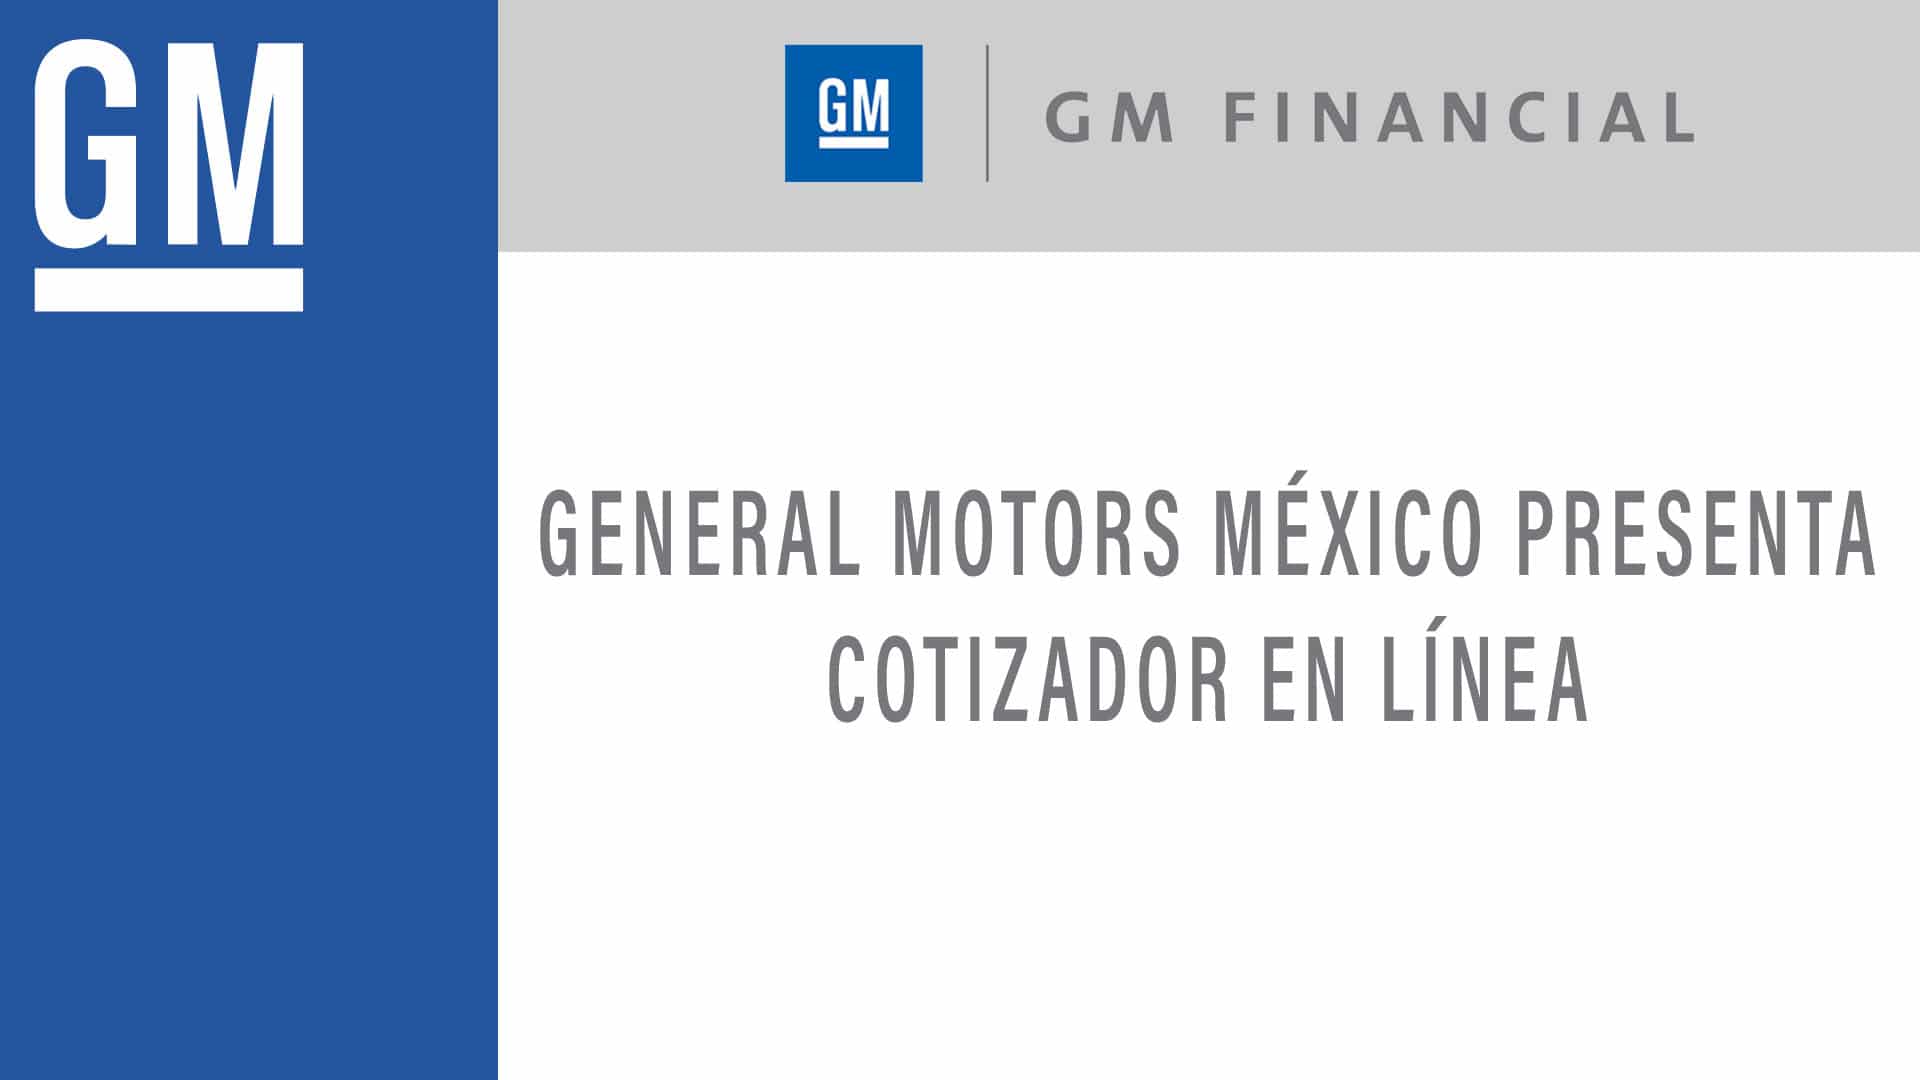 GM fianancial México